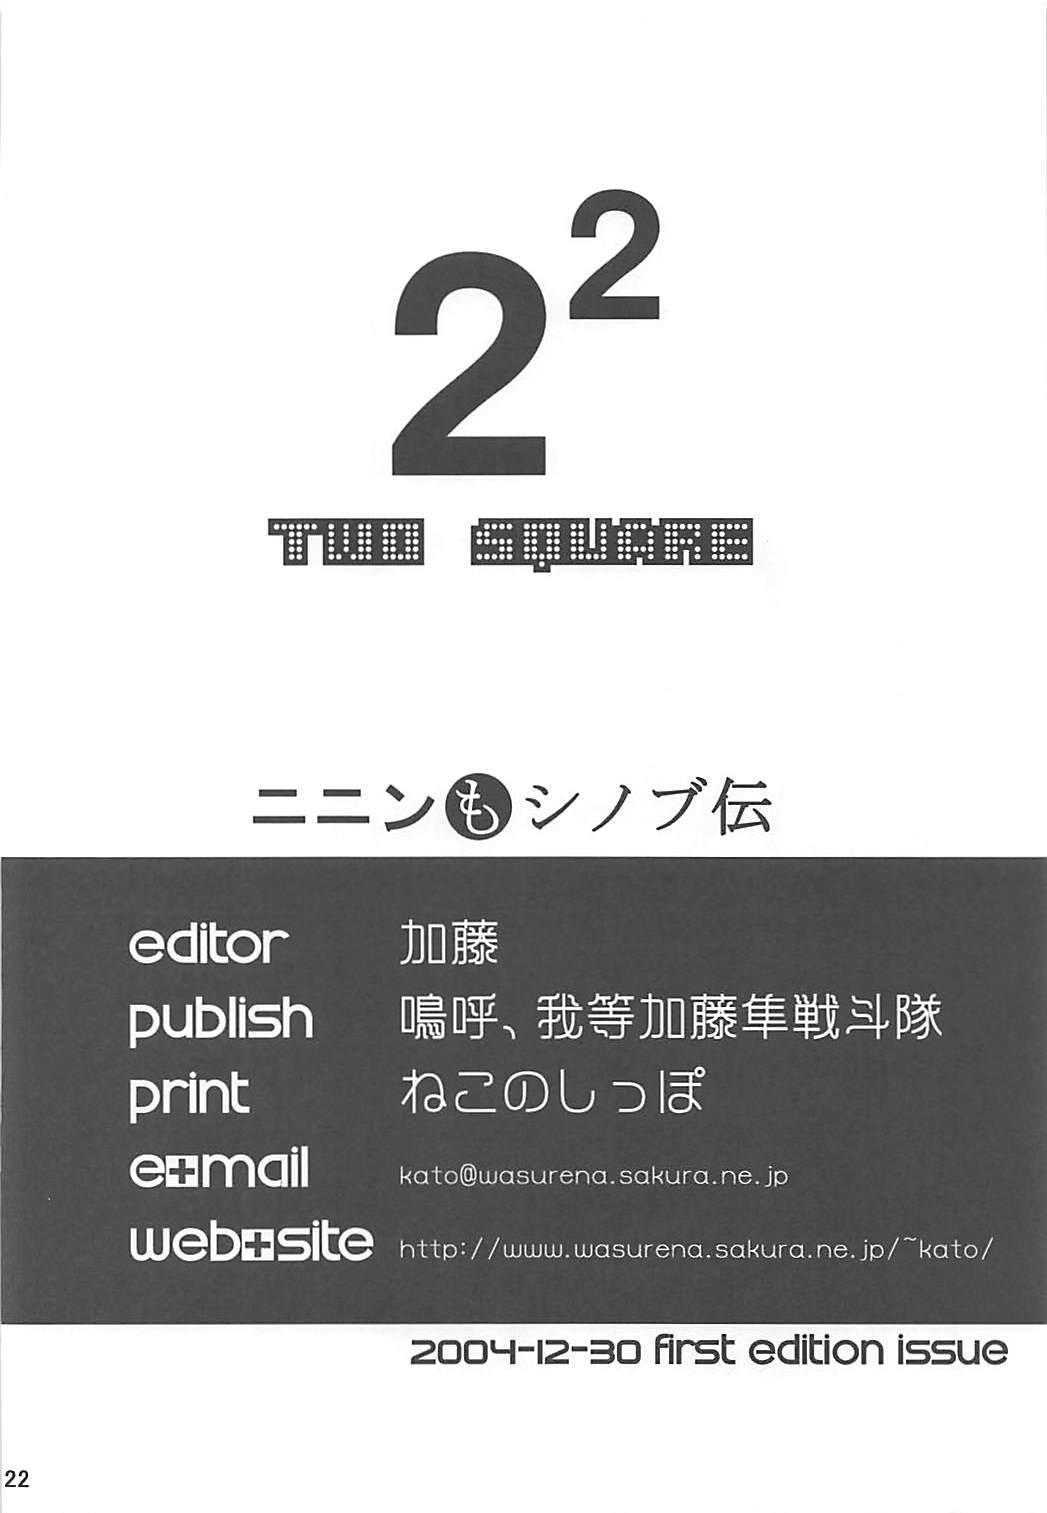 Bunduda 2²=Shinobuden - 2x2 shinobuden Fucking - Page 21